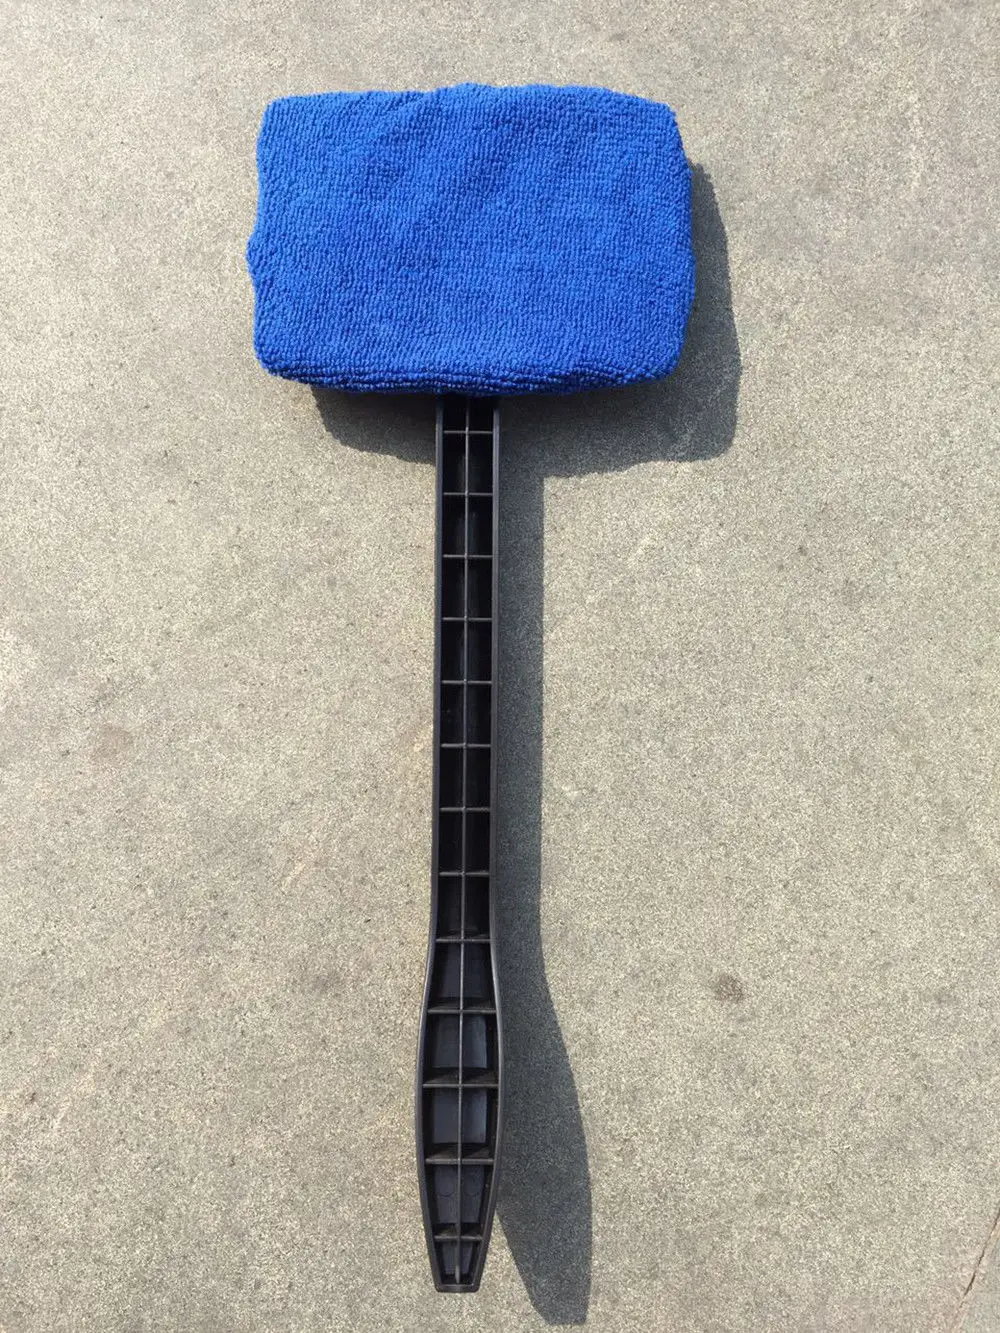 Ручка для мытья автомобиля щетка для мытья окна автомобиля чистая ткань для ветрового стекла моющиеся Инструменты - Цвет: Небесно-голубой